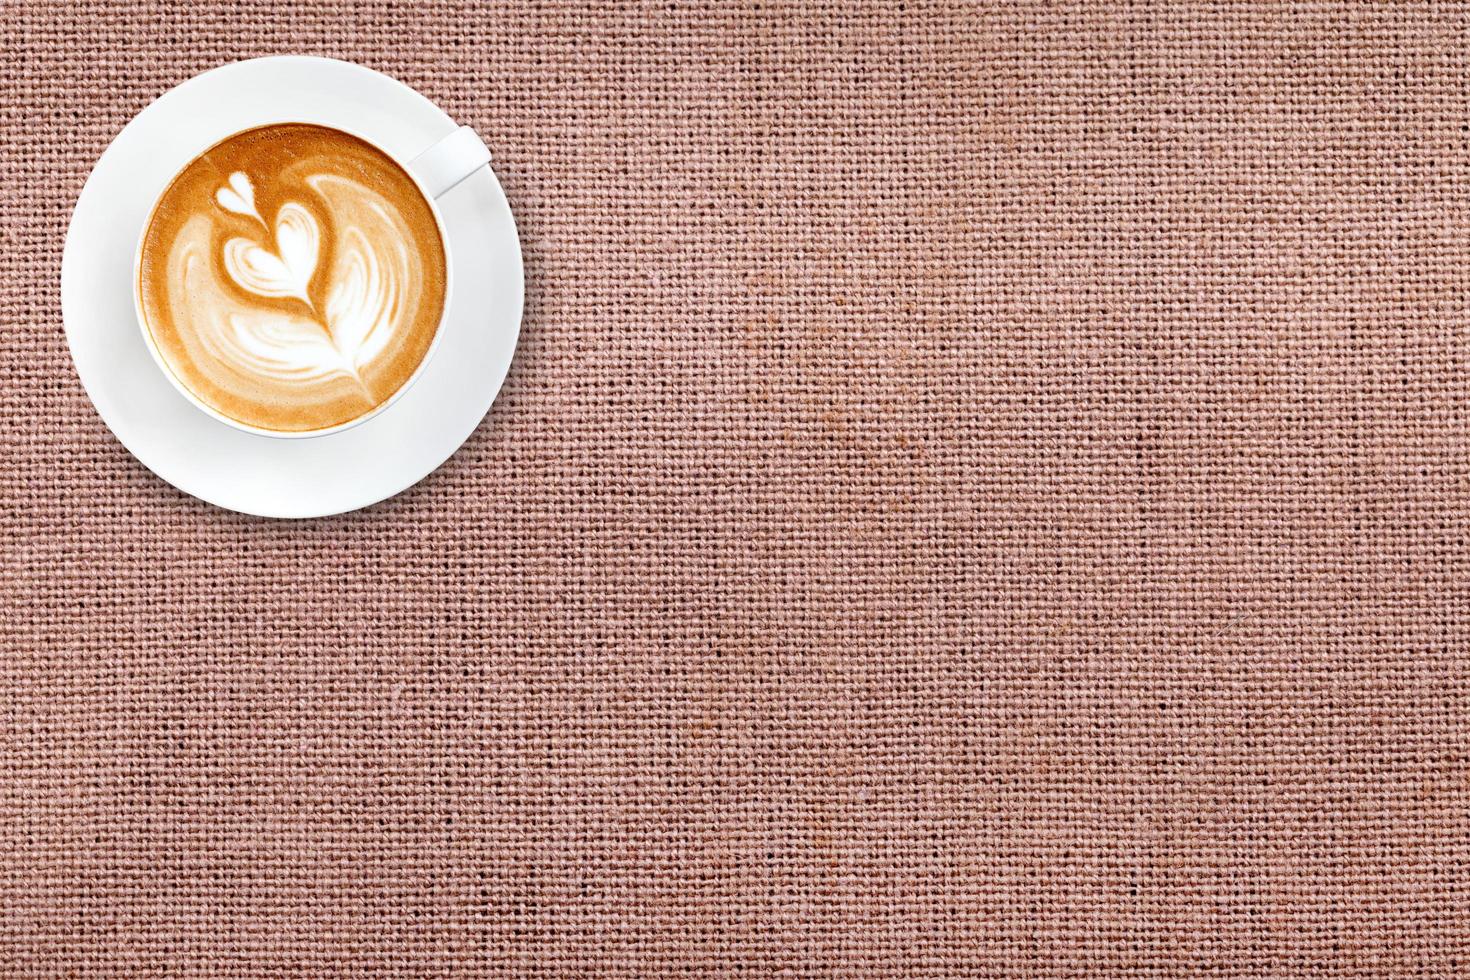 café latte art vue de dessus sur fond de tissu de coton photo